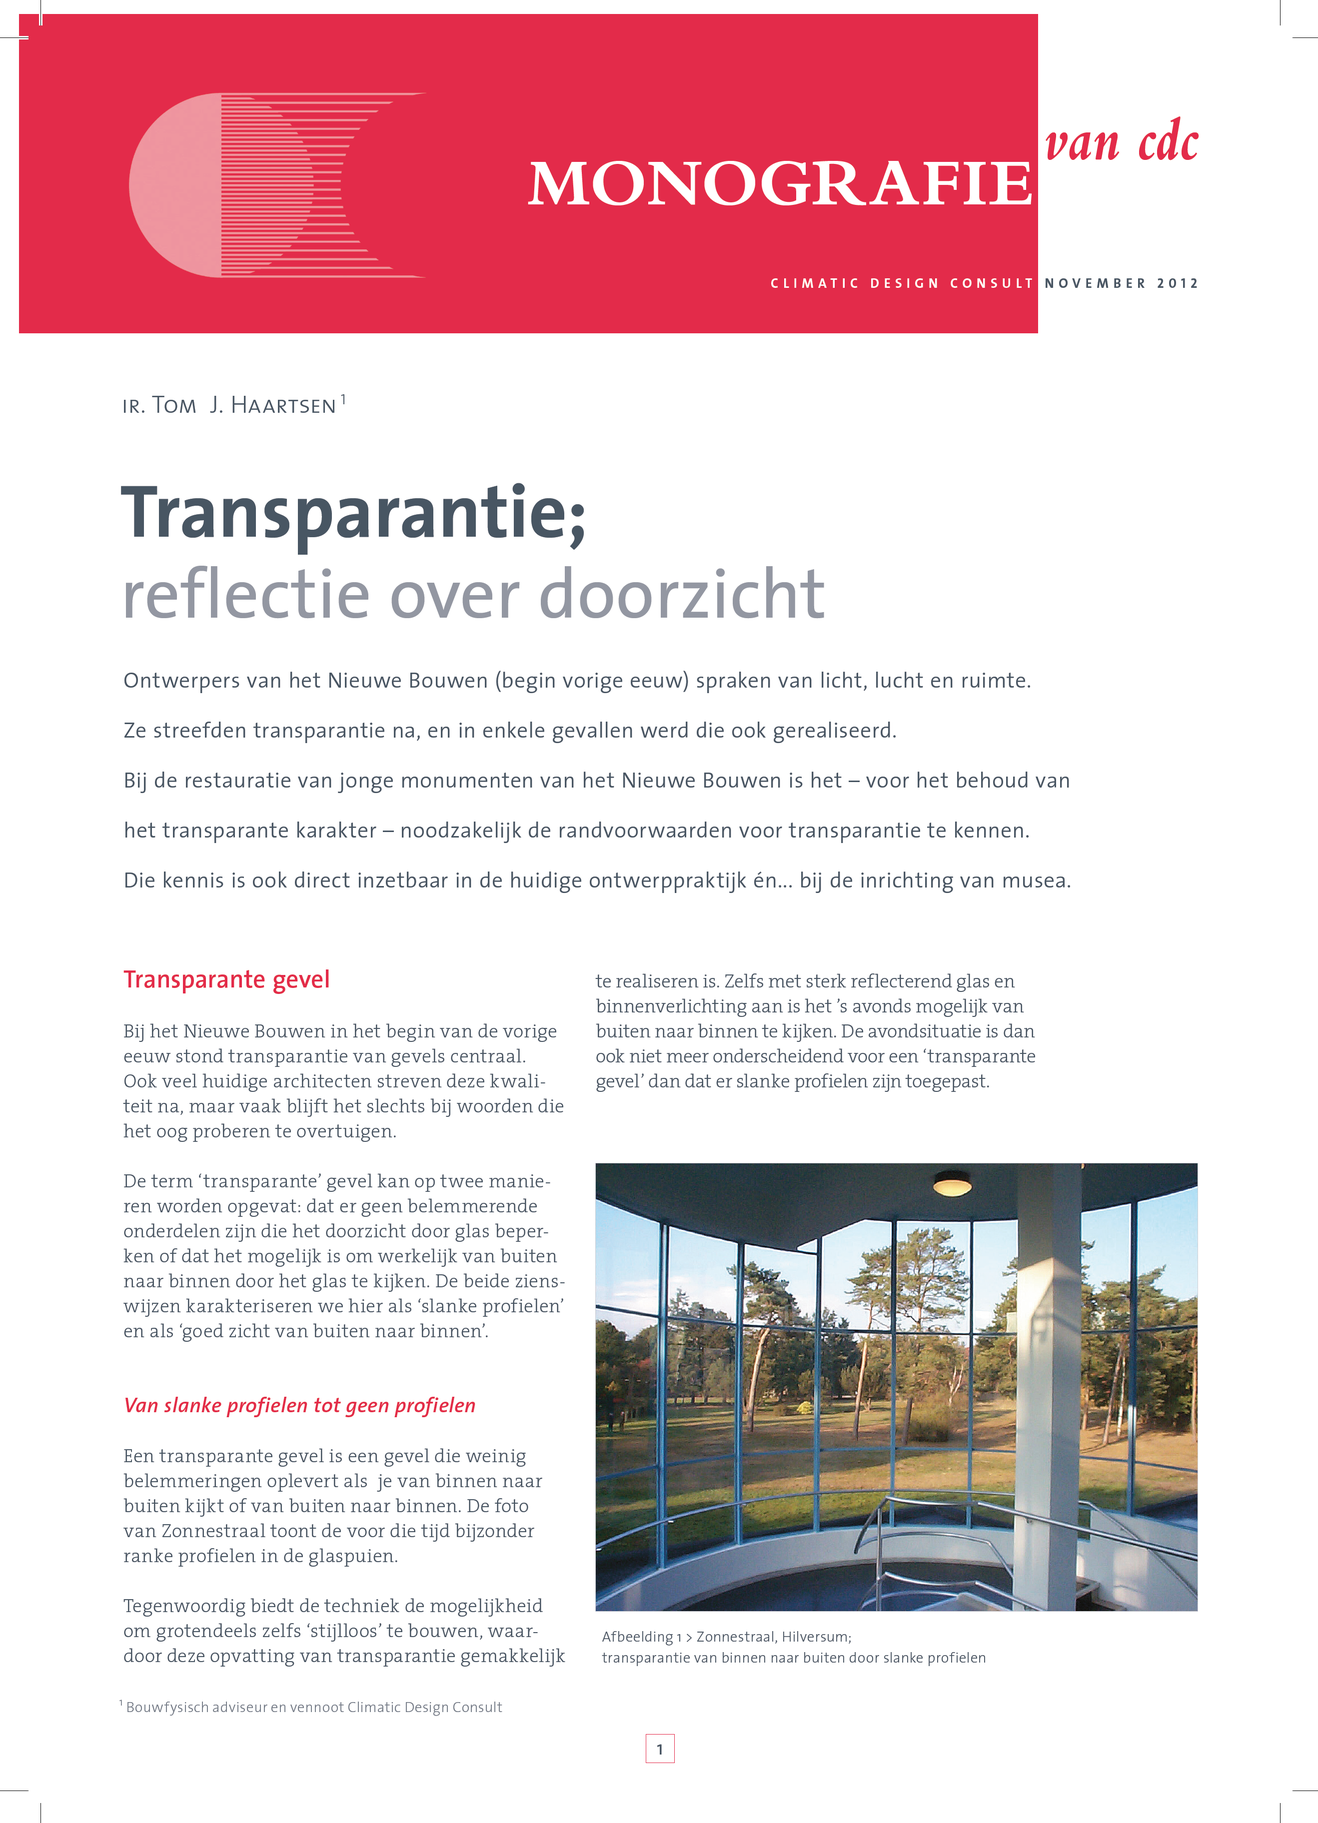 Transparantie blad 1